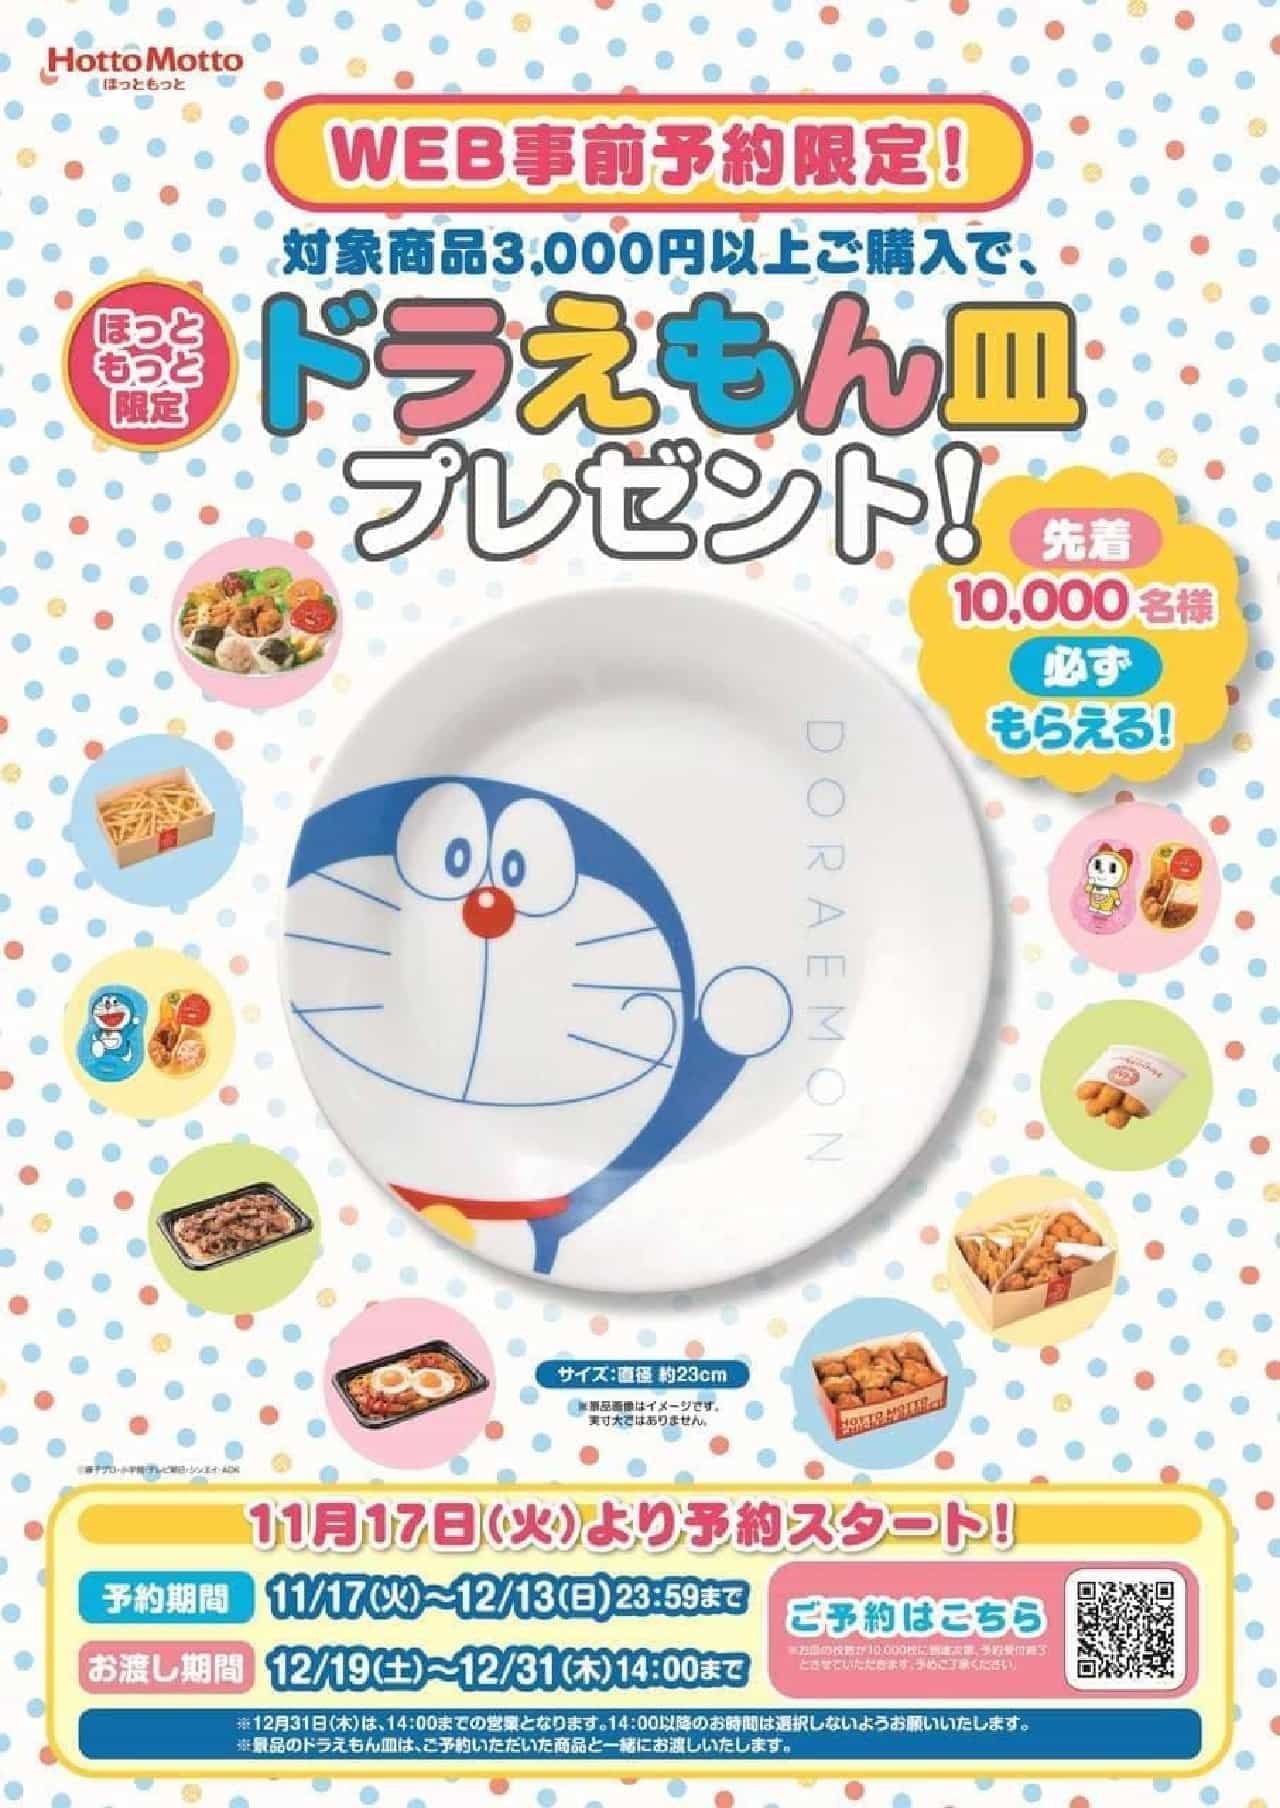 Hotto Motto "Doraemon Plate Present Campaign"